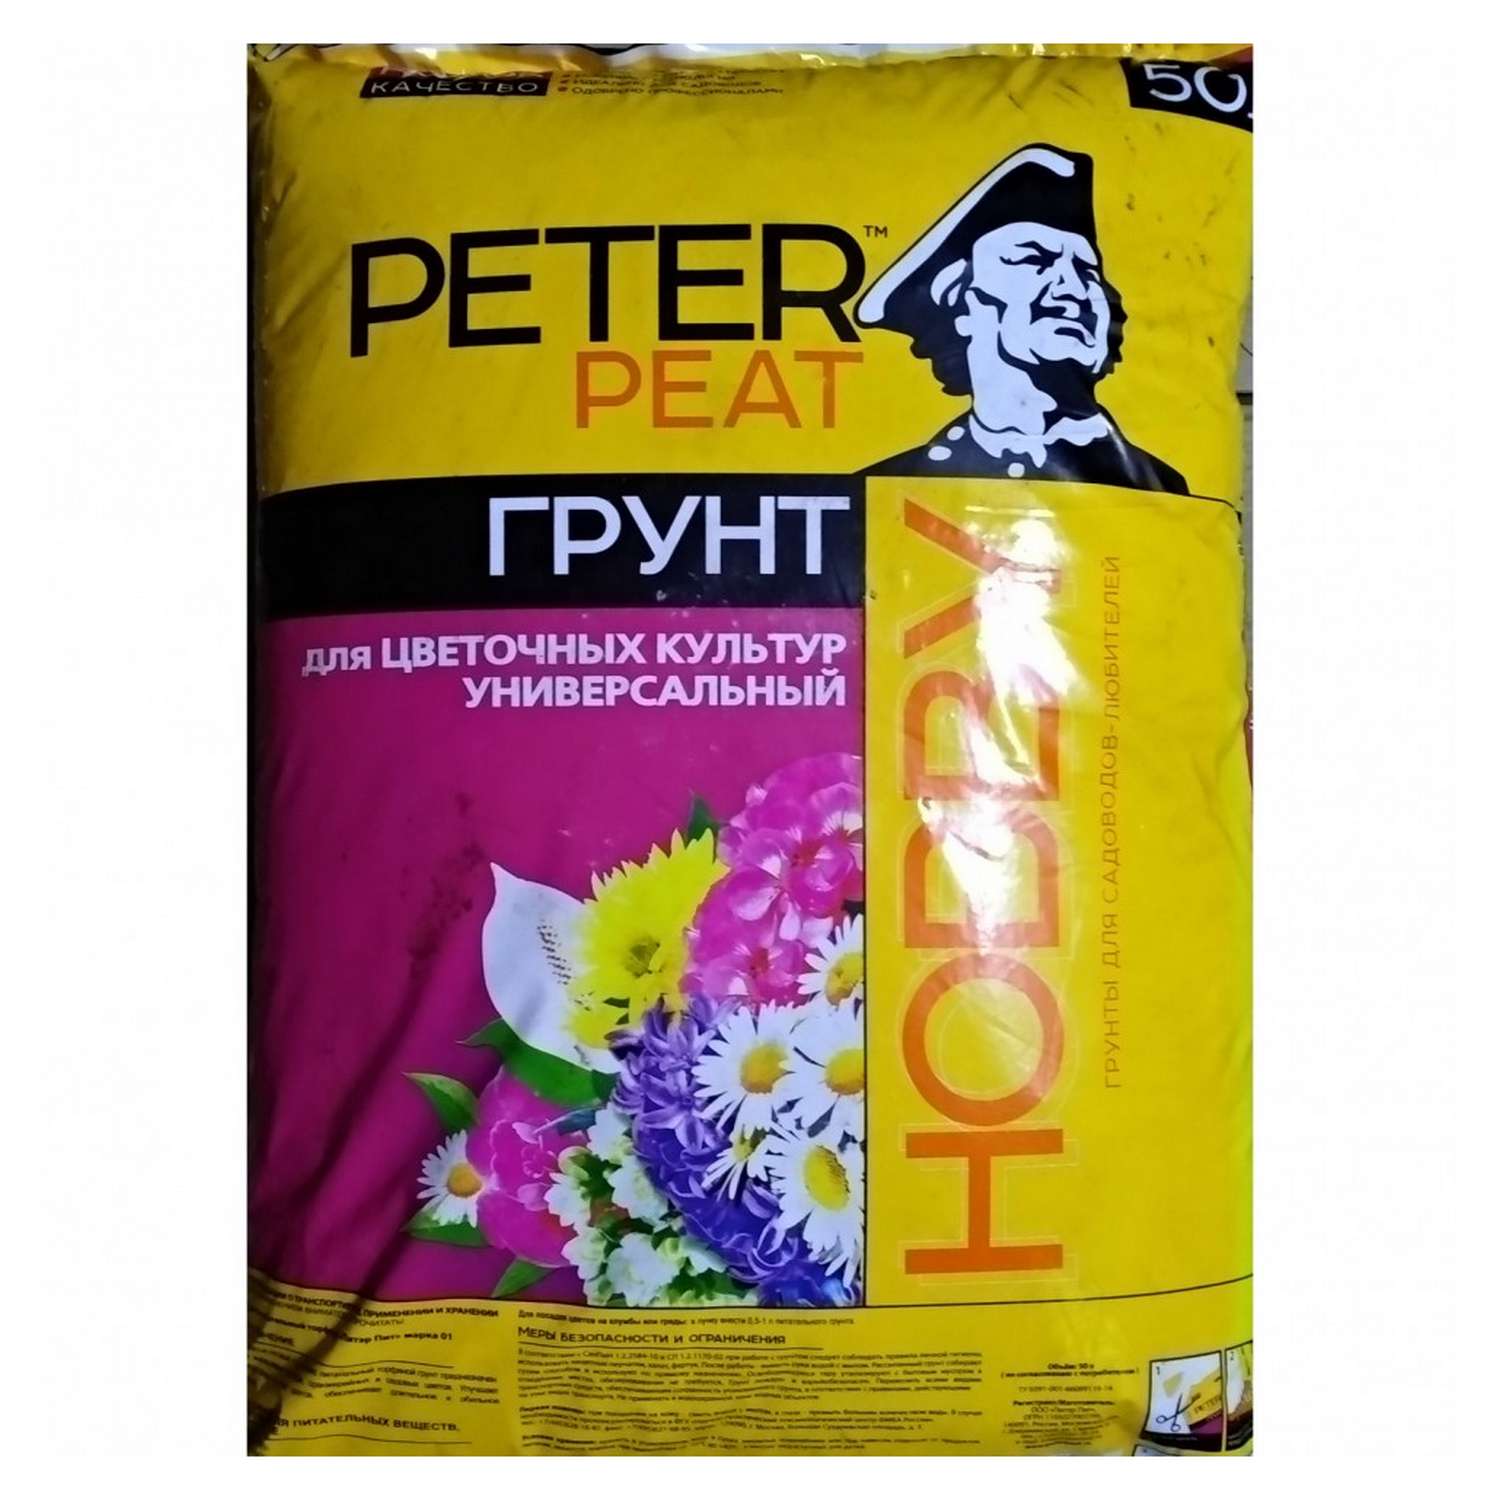 Грунт PETER PEAT Для цветочных культур универсальный линия Хобби 50л - фото 1